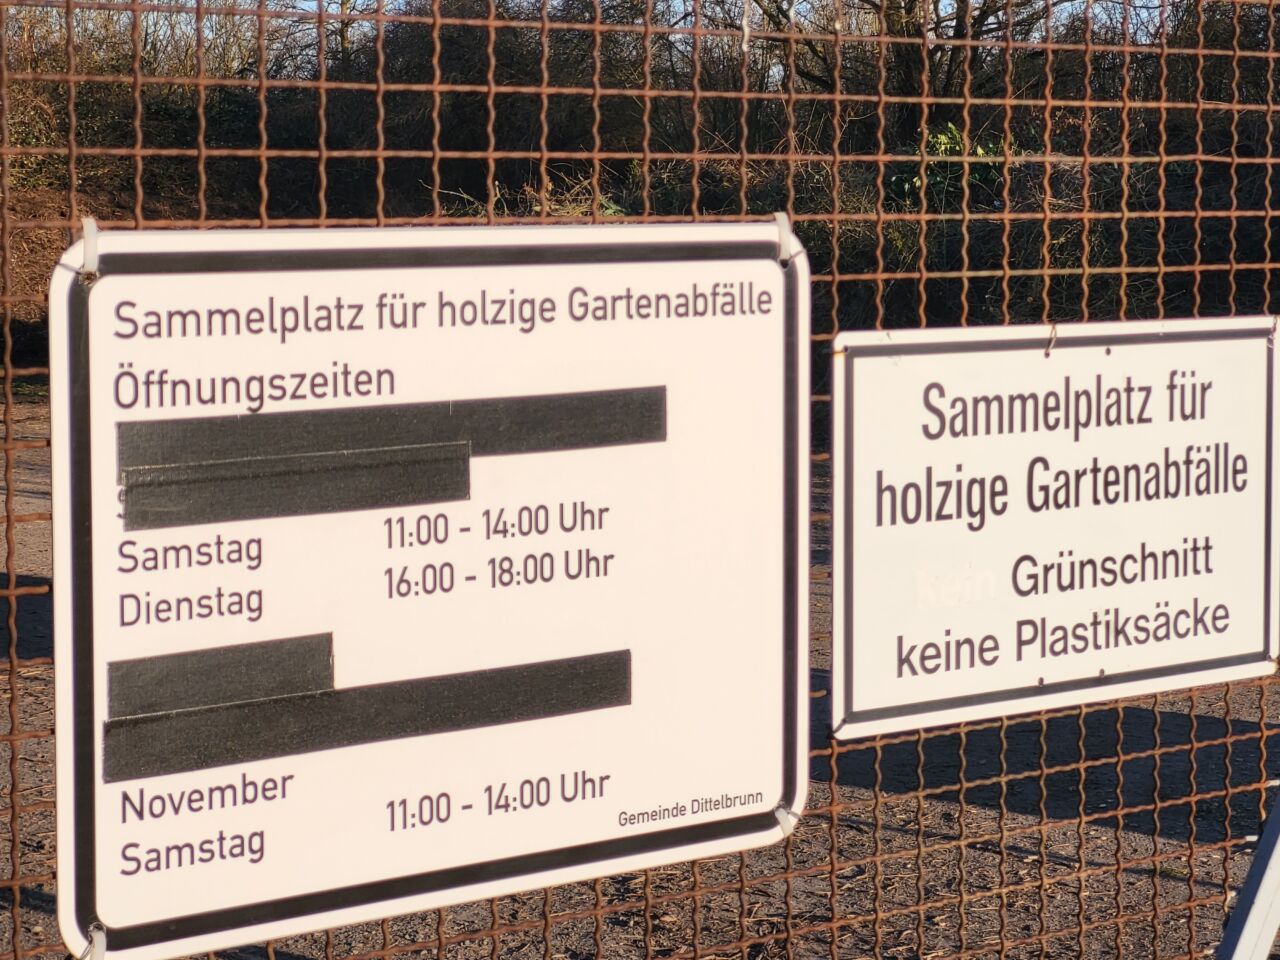 Sammelplatz für holzige Gartenabfälle in Dittelbrunn